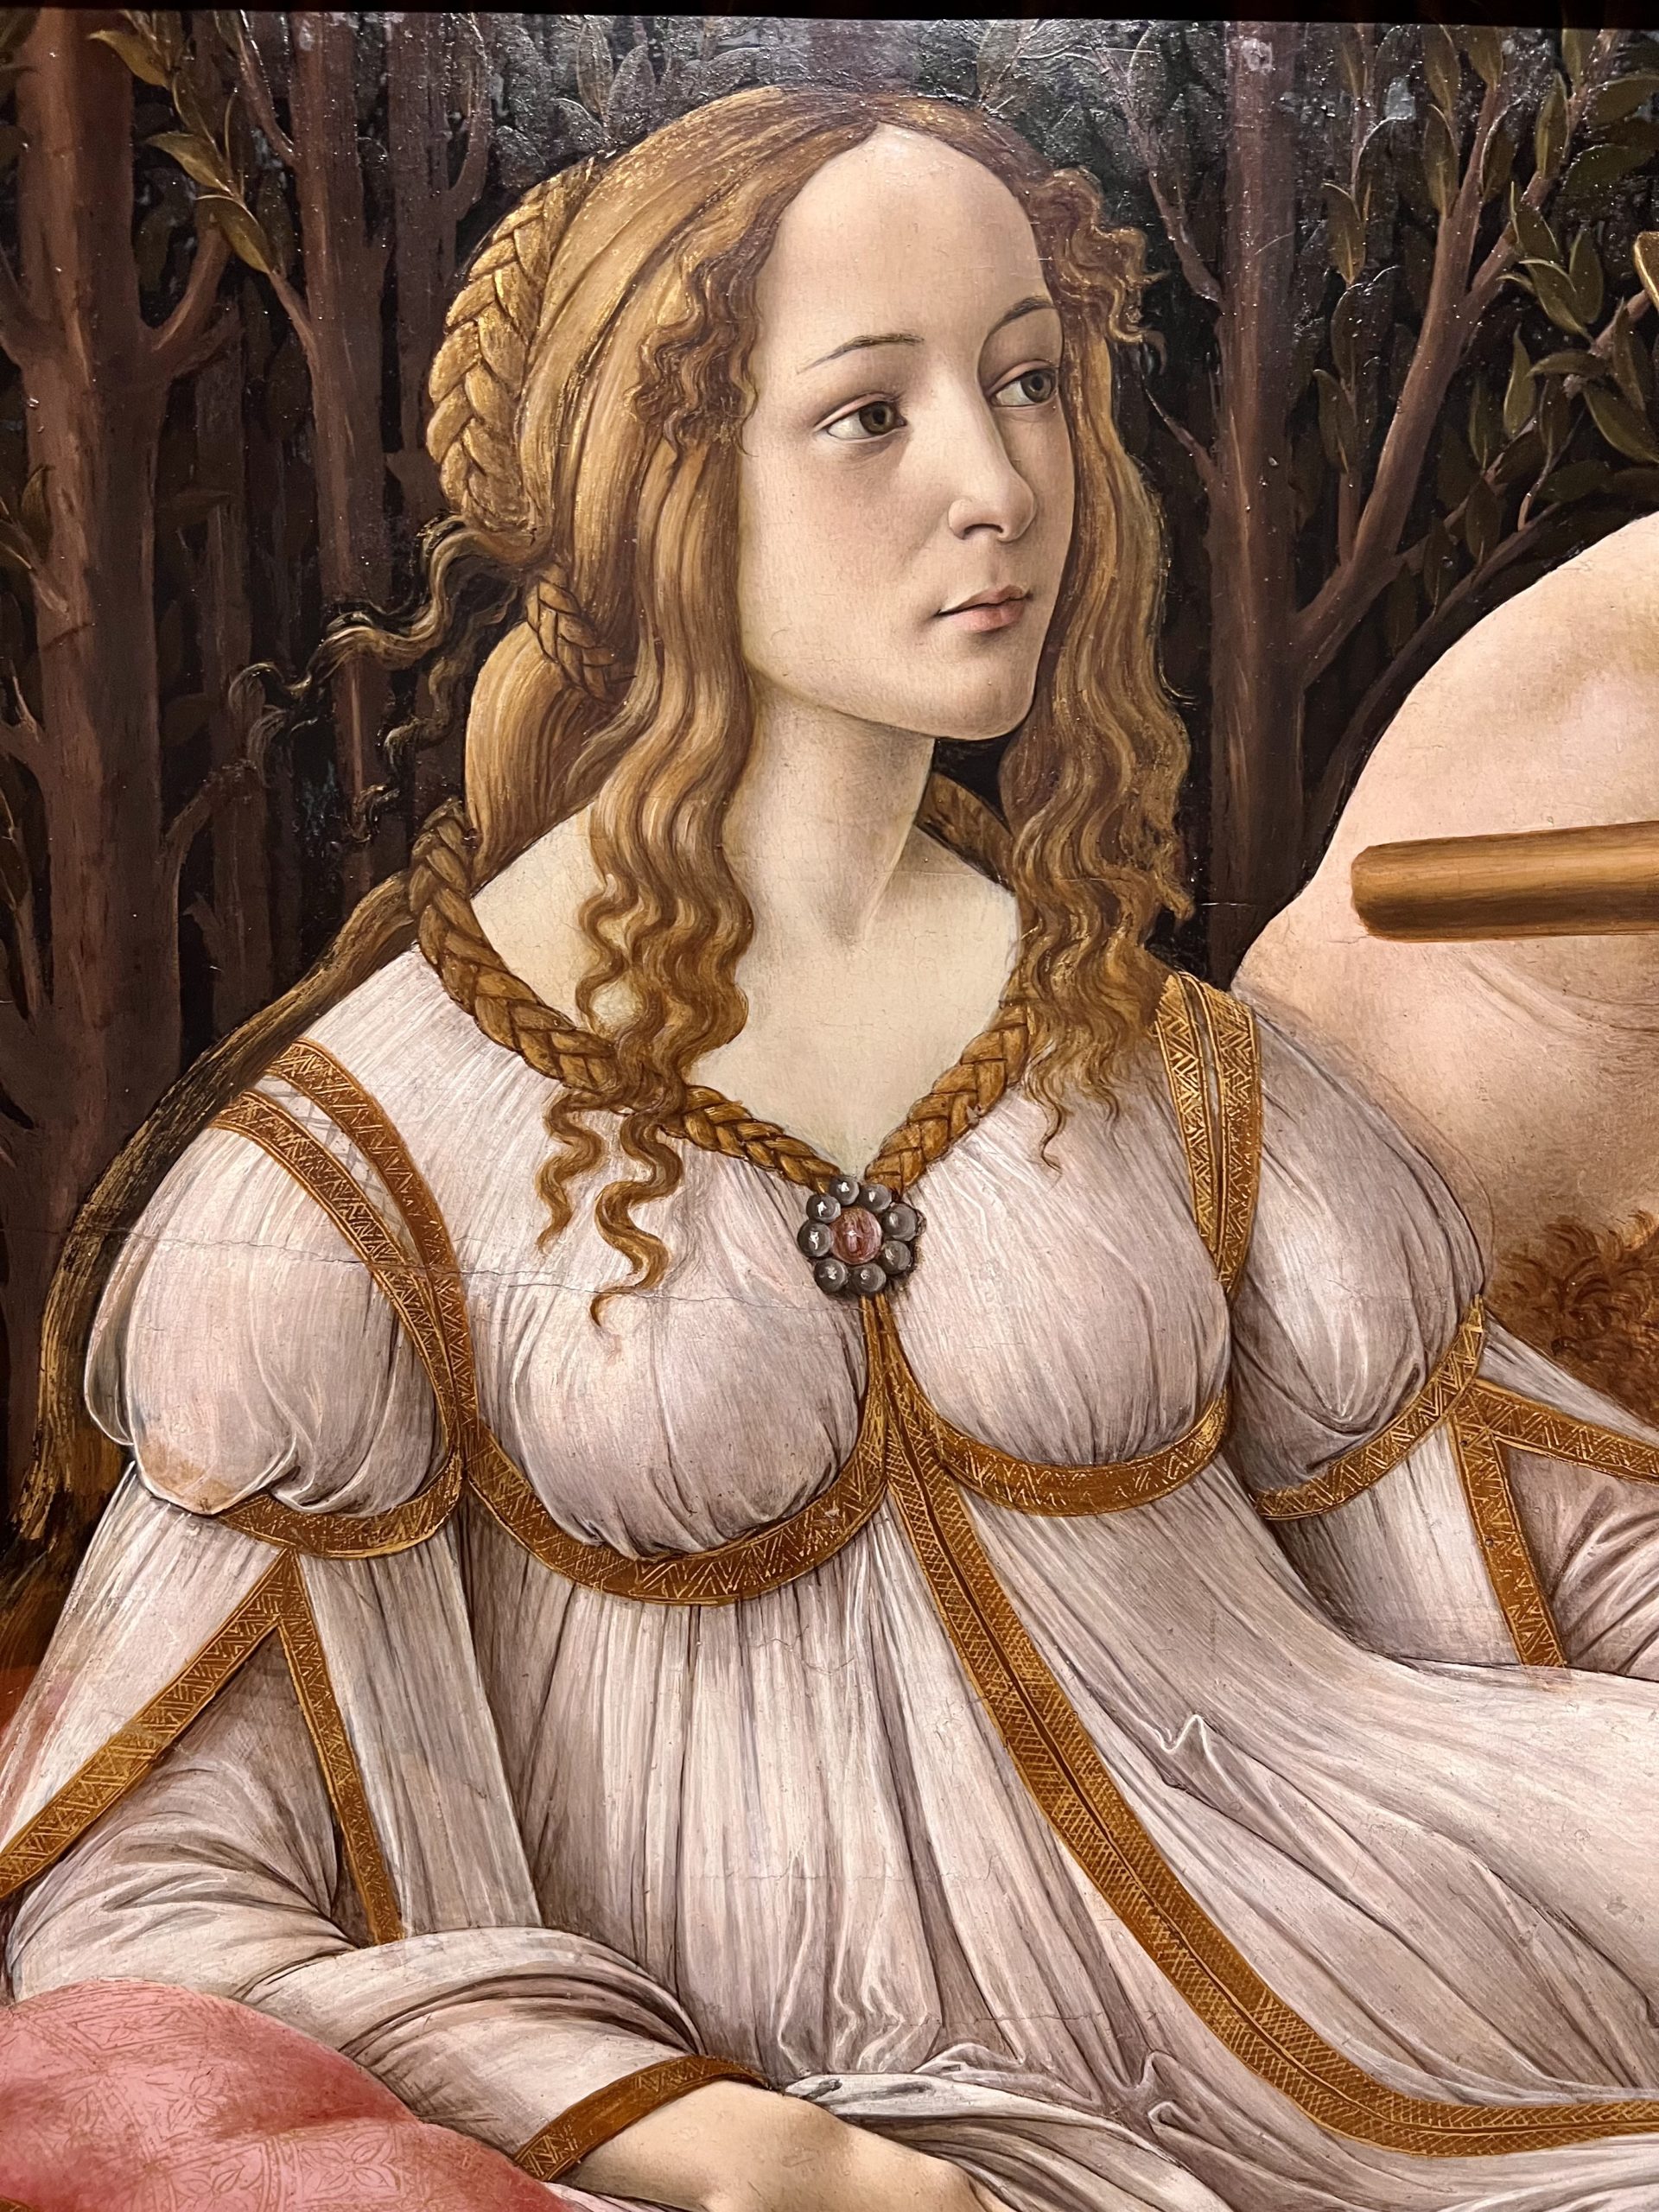 Botticelli's Venus and Mars